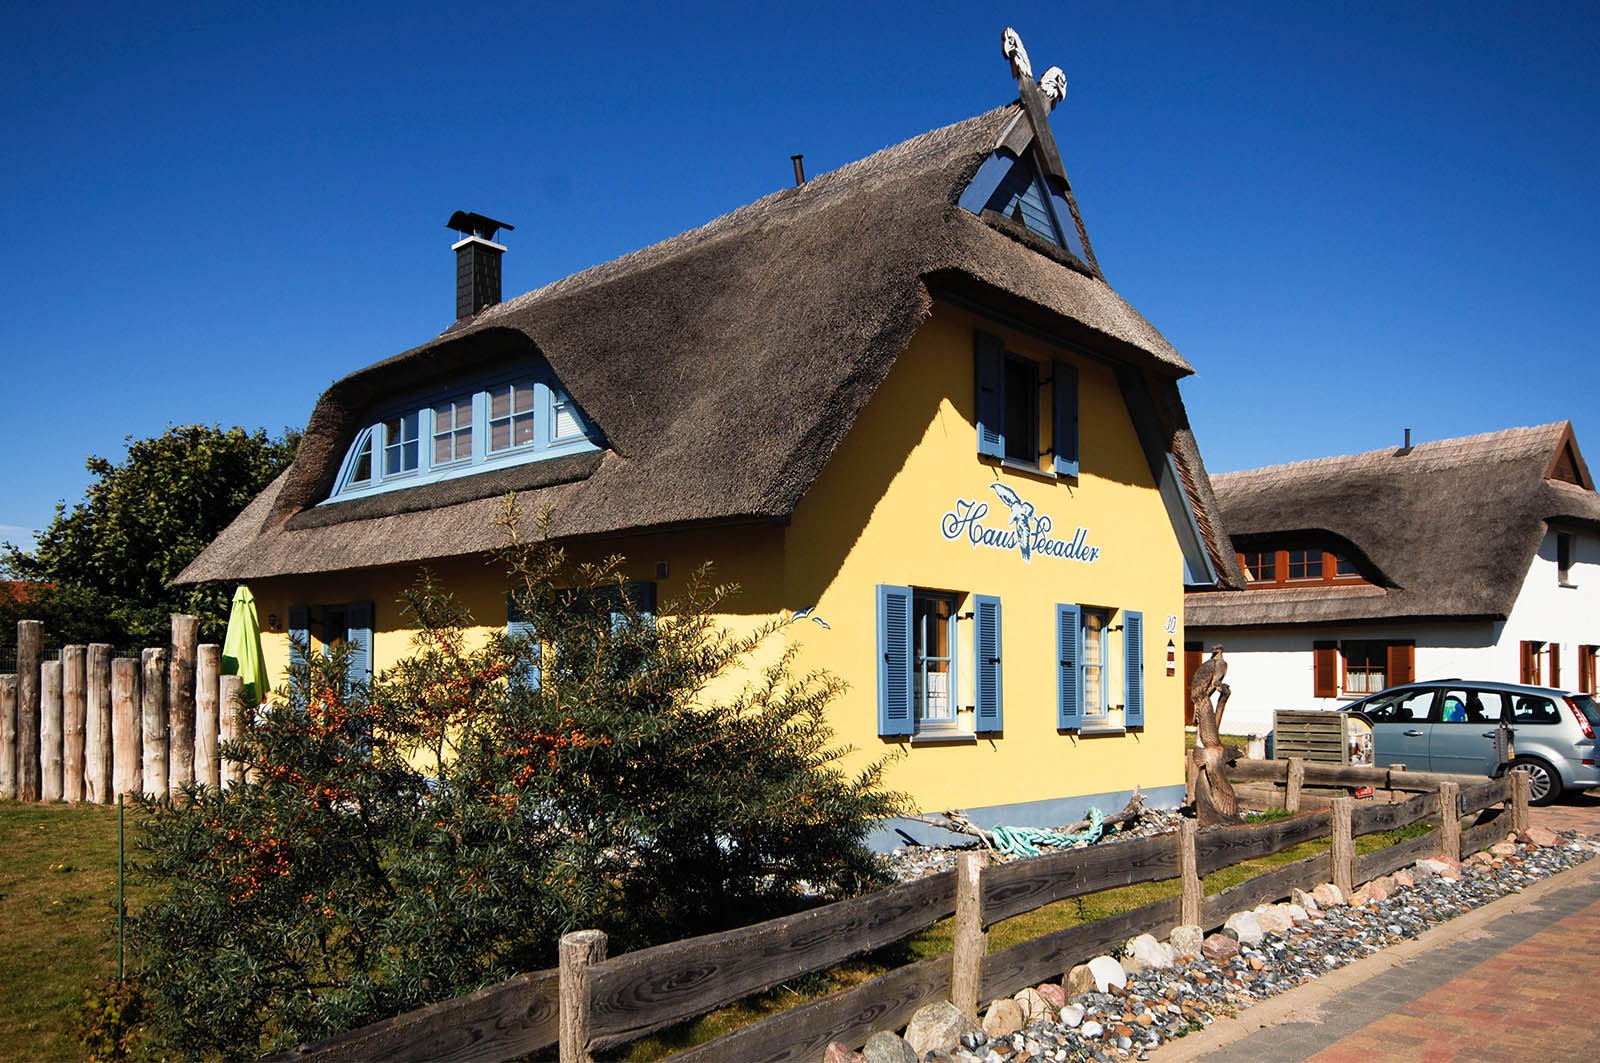 Haus Seeadler Ferienhaus Glowe auf der Insel Rügen